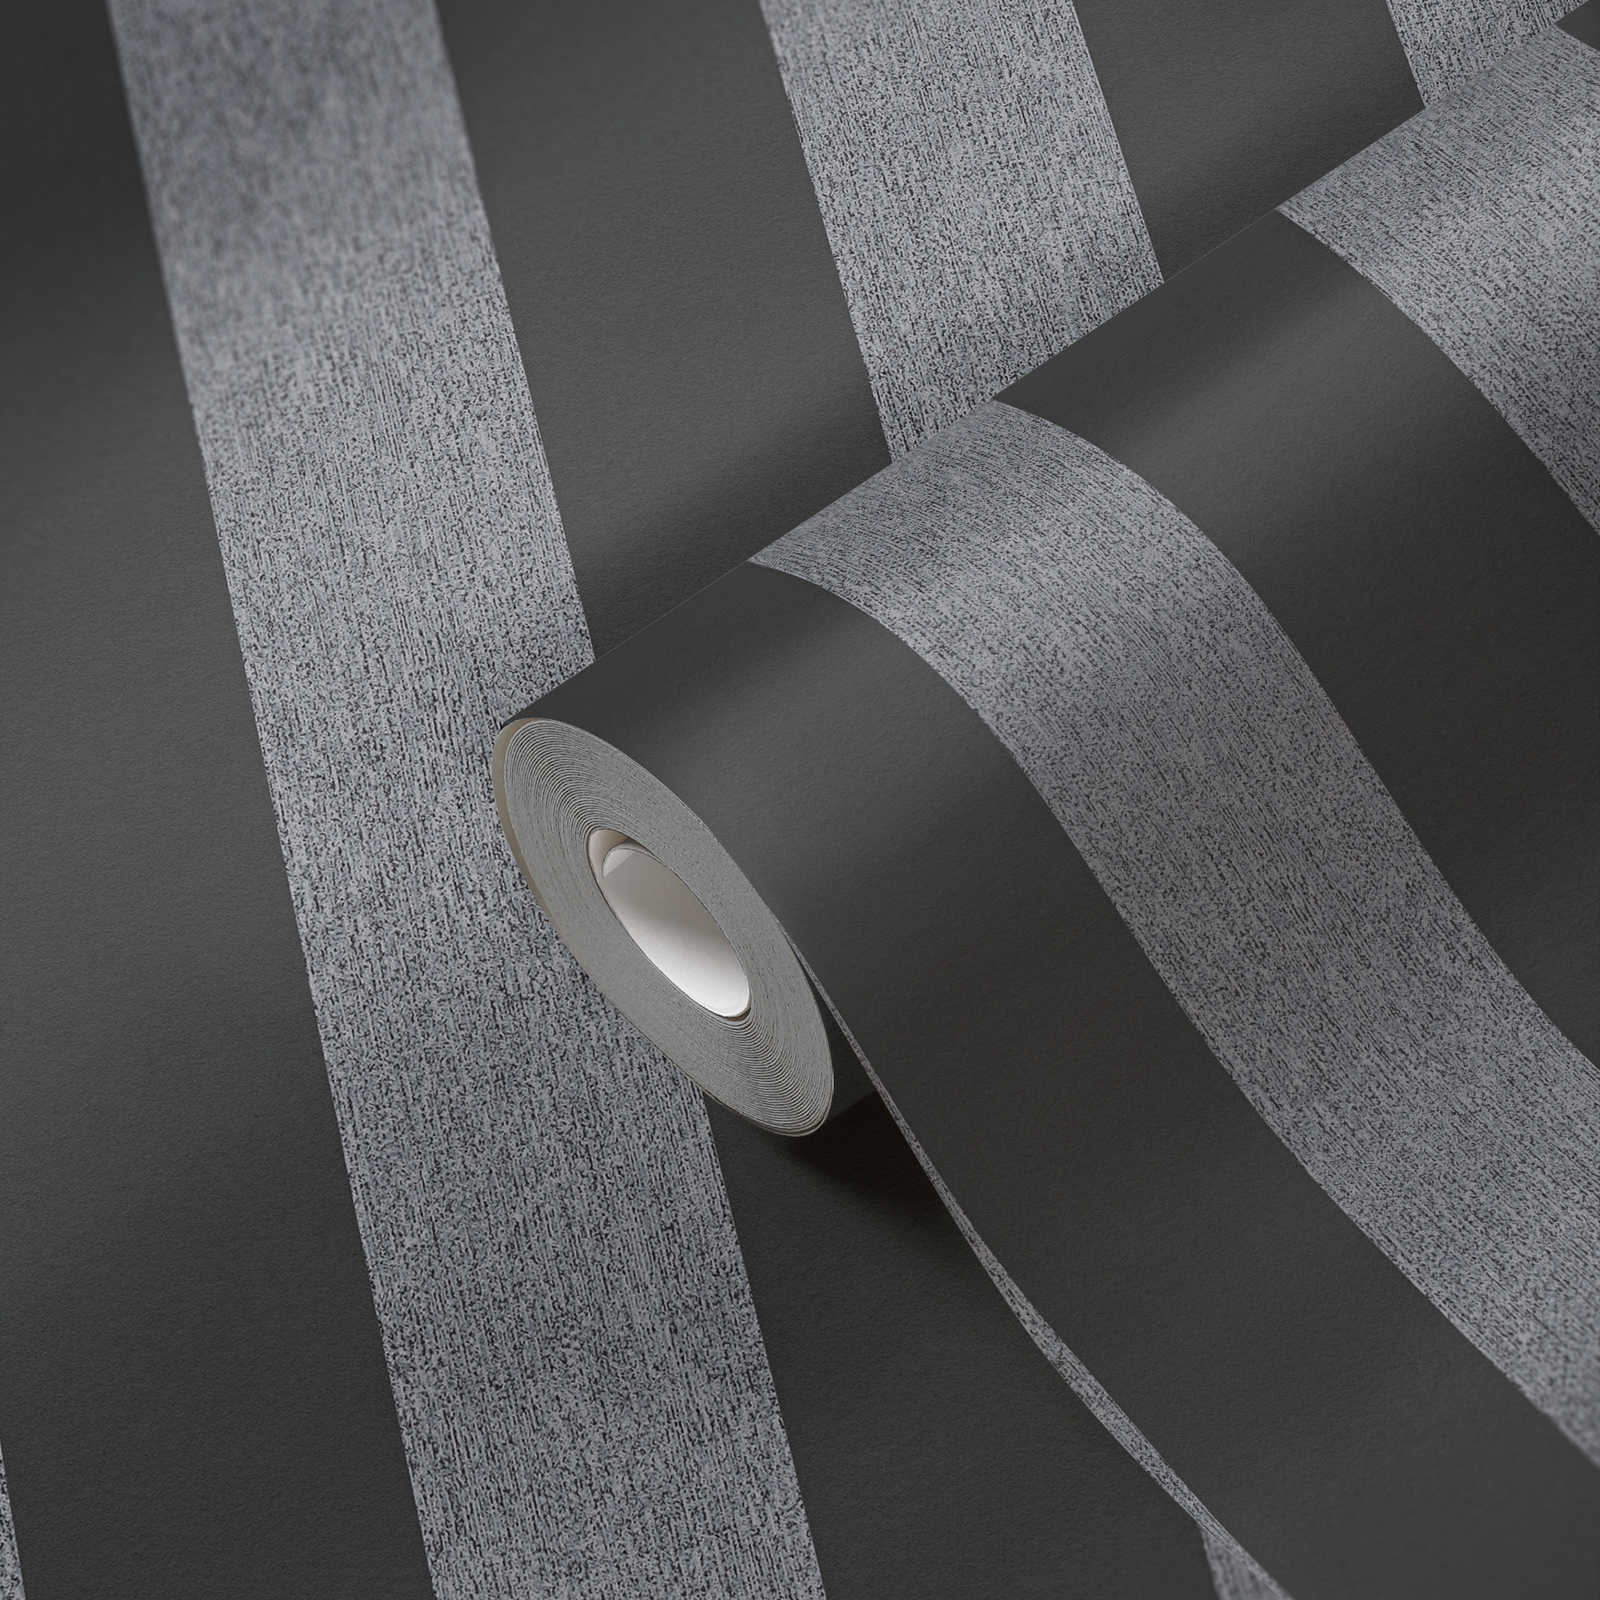             Stripes vliesbehang in matte structuurlook - zwart, grijs
        